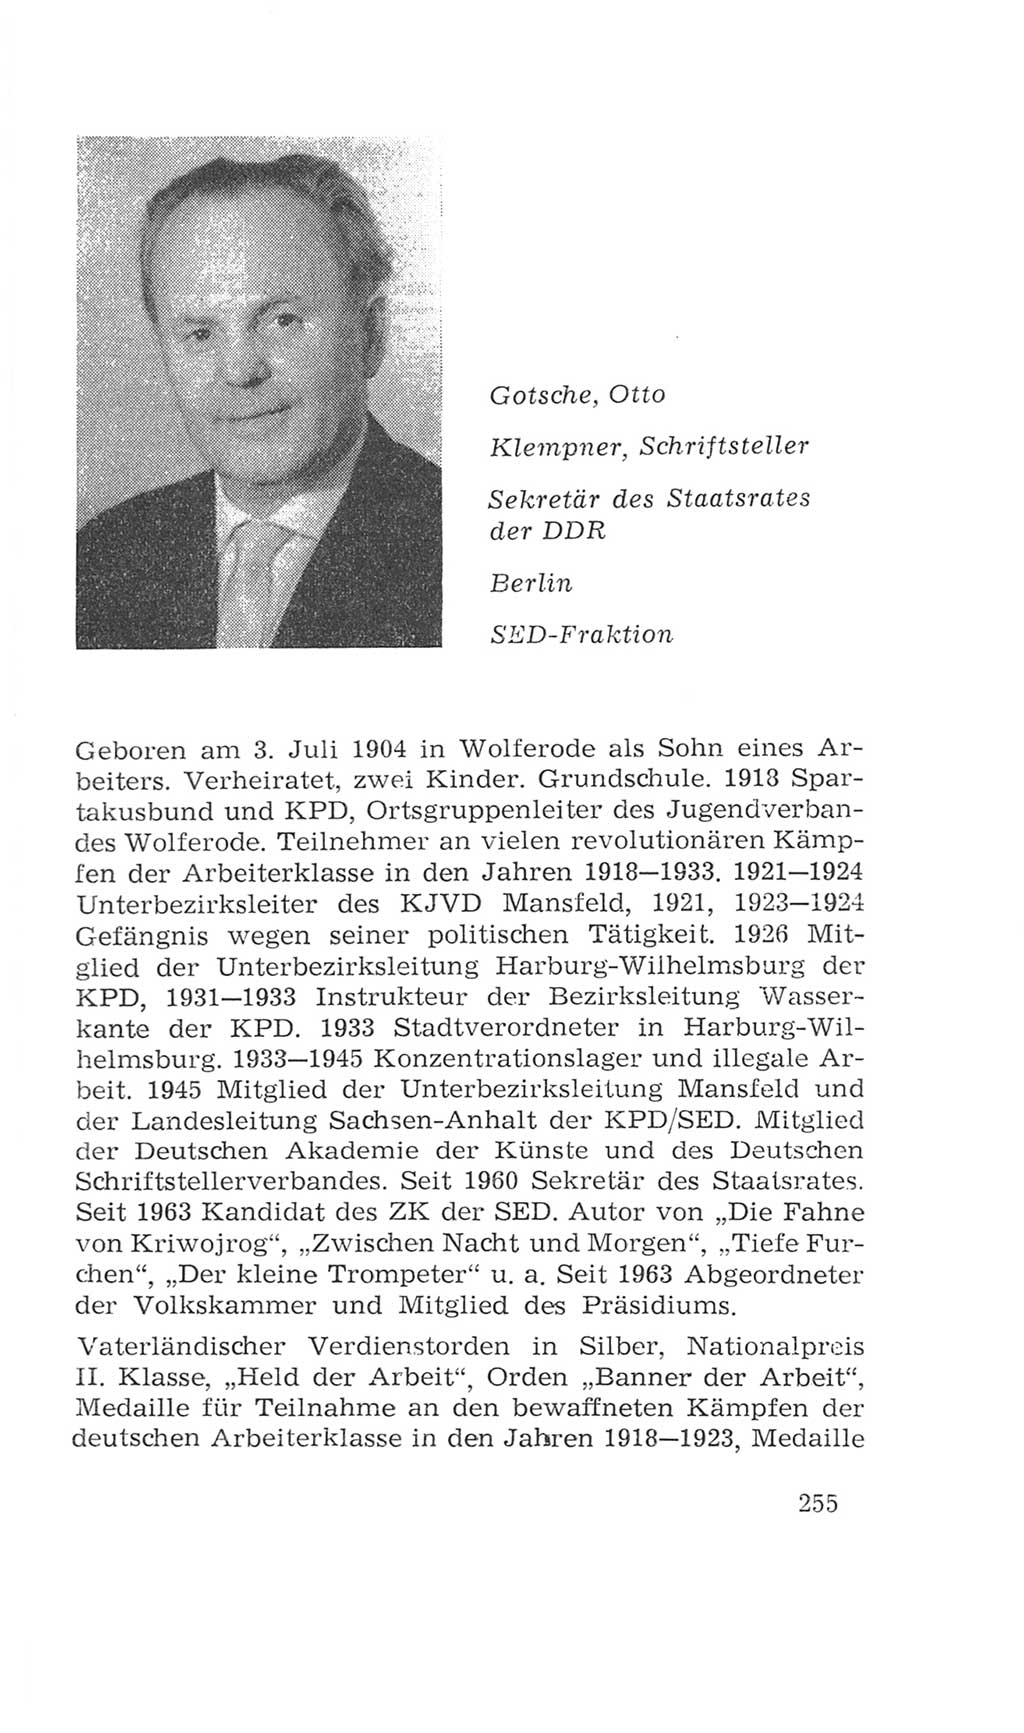 Volkskammer (VK) der Deutschen Demokratischen Republik (DDR), 4. Wahlperiode 1963-1967, Seite 255 (VK. DDR 4. WP. 1963-1967, S. 255)